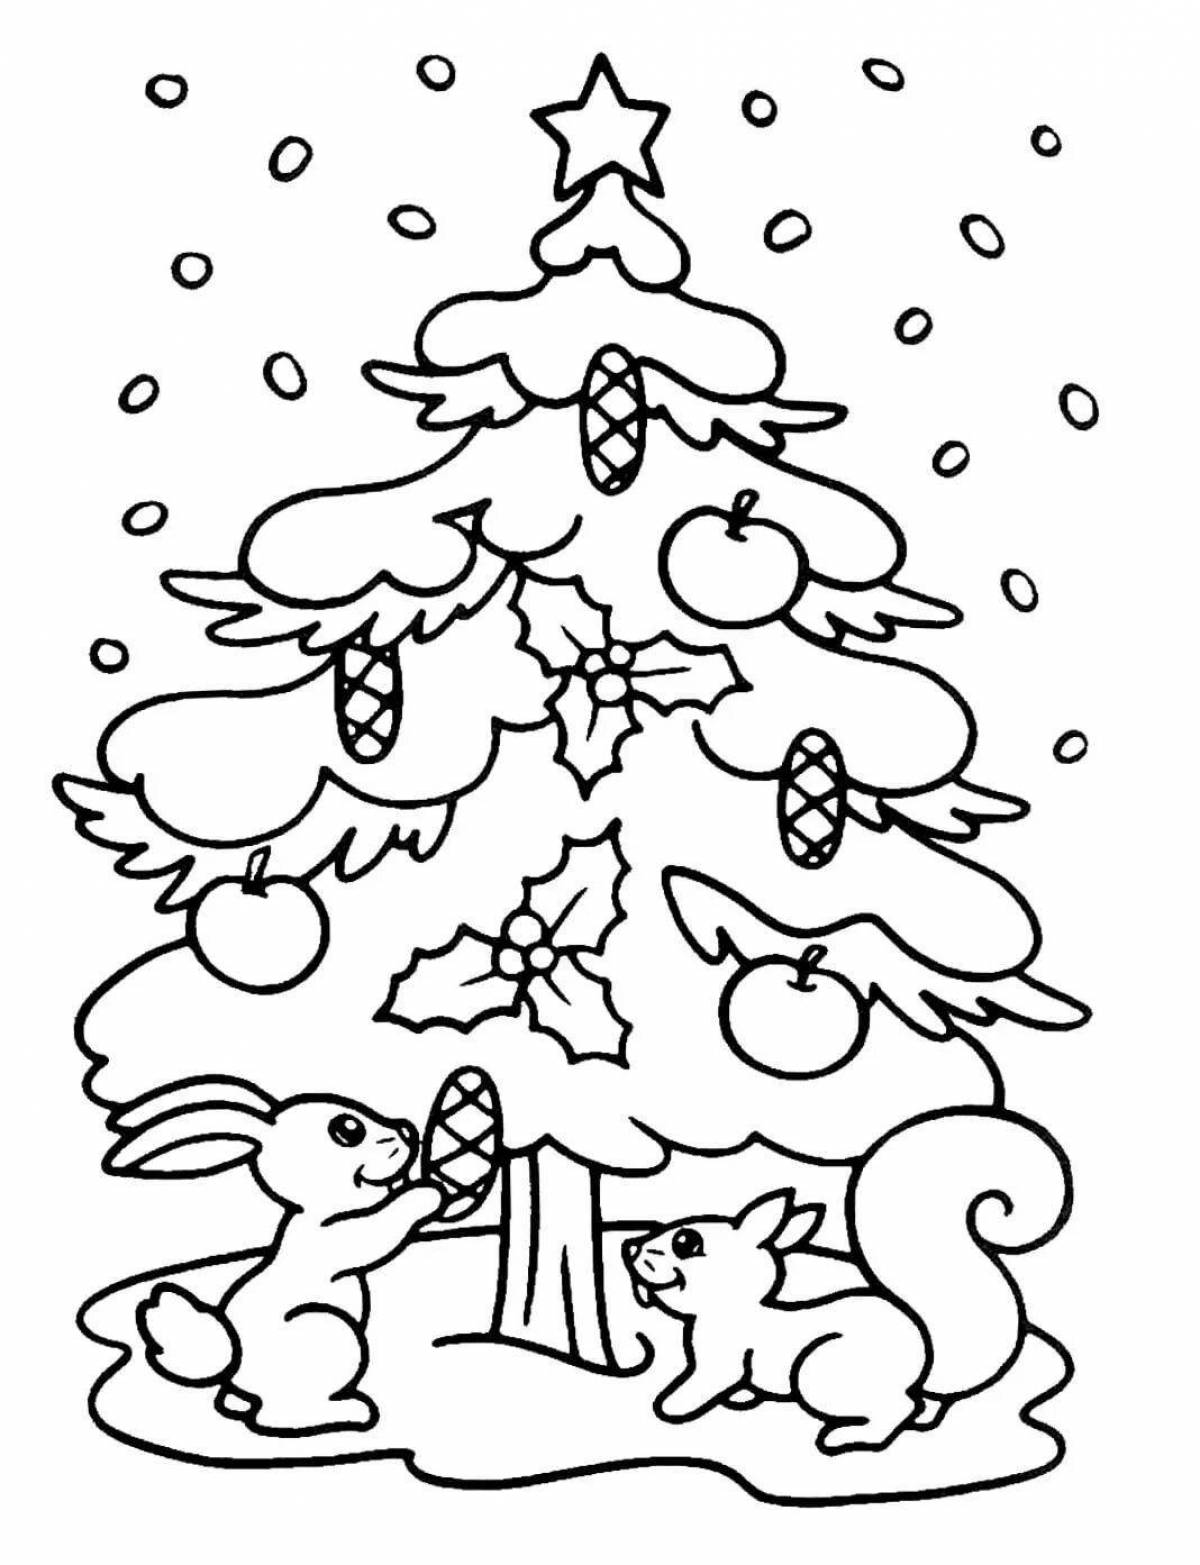 Игривая страница раскраски рождественской елки для детей